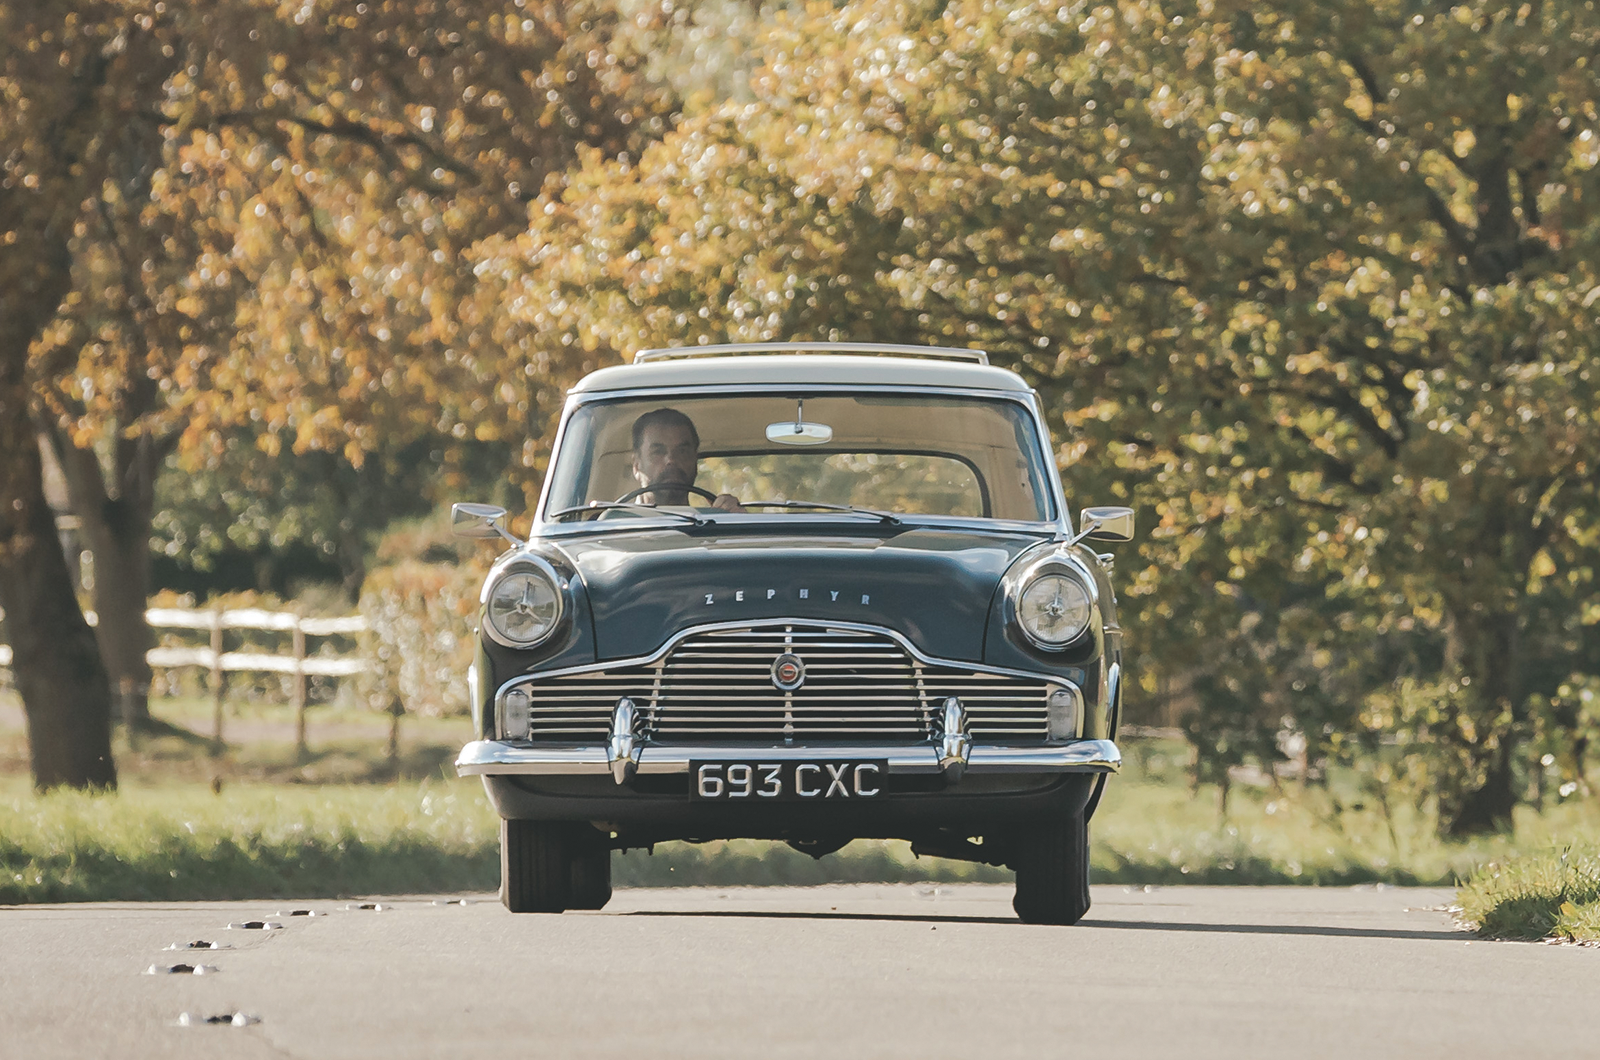 Classic & Sports Car – Ford Zephyr MkII Farnham estate: getting the wagon rolling